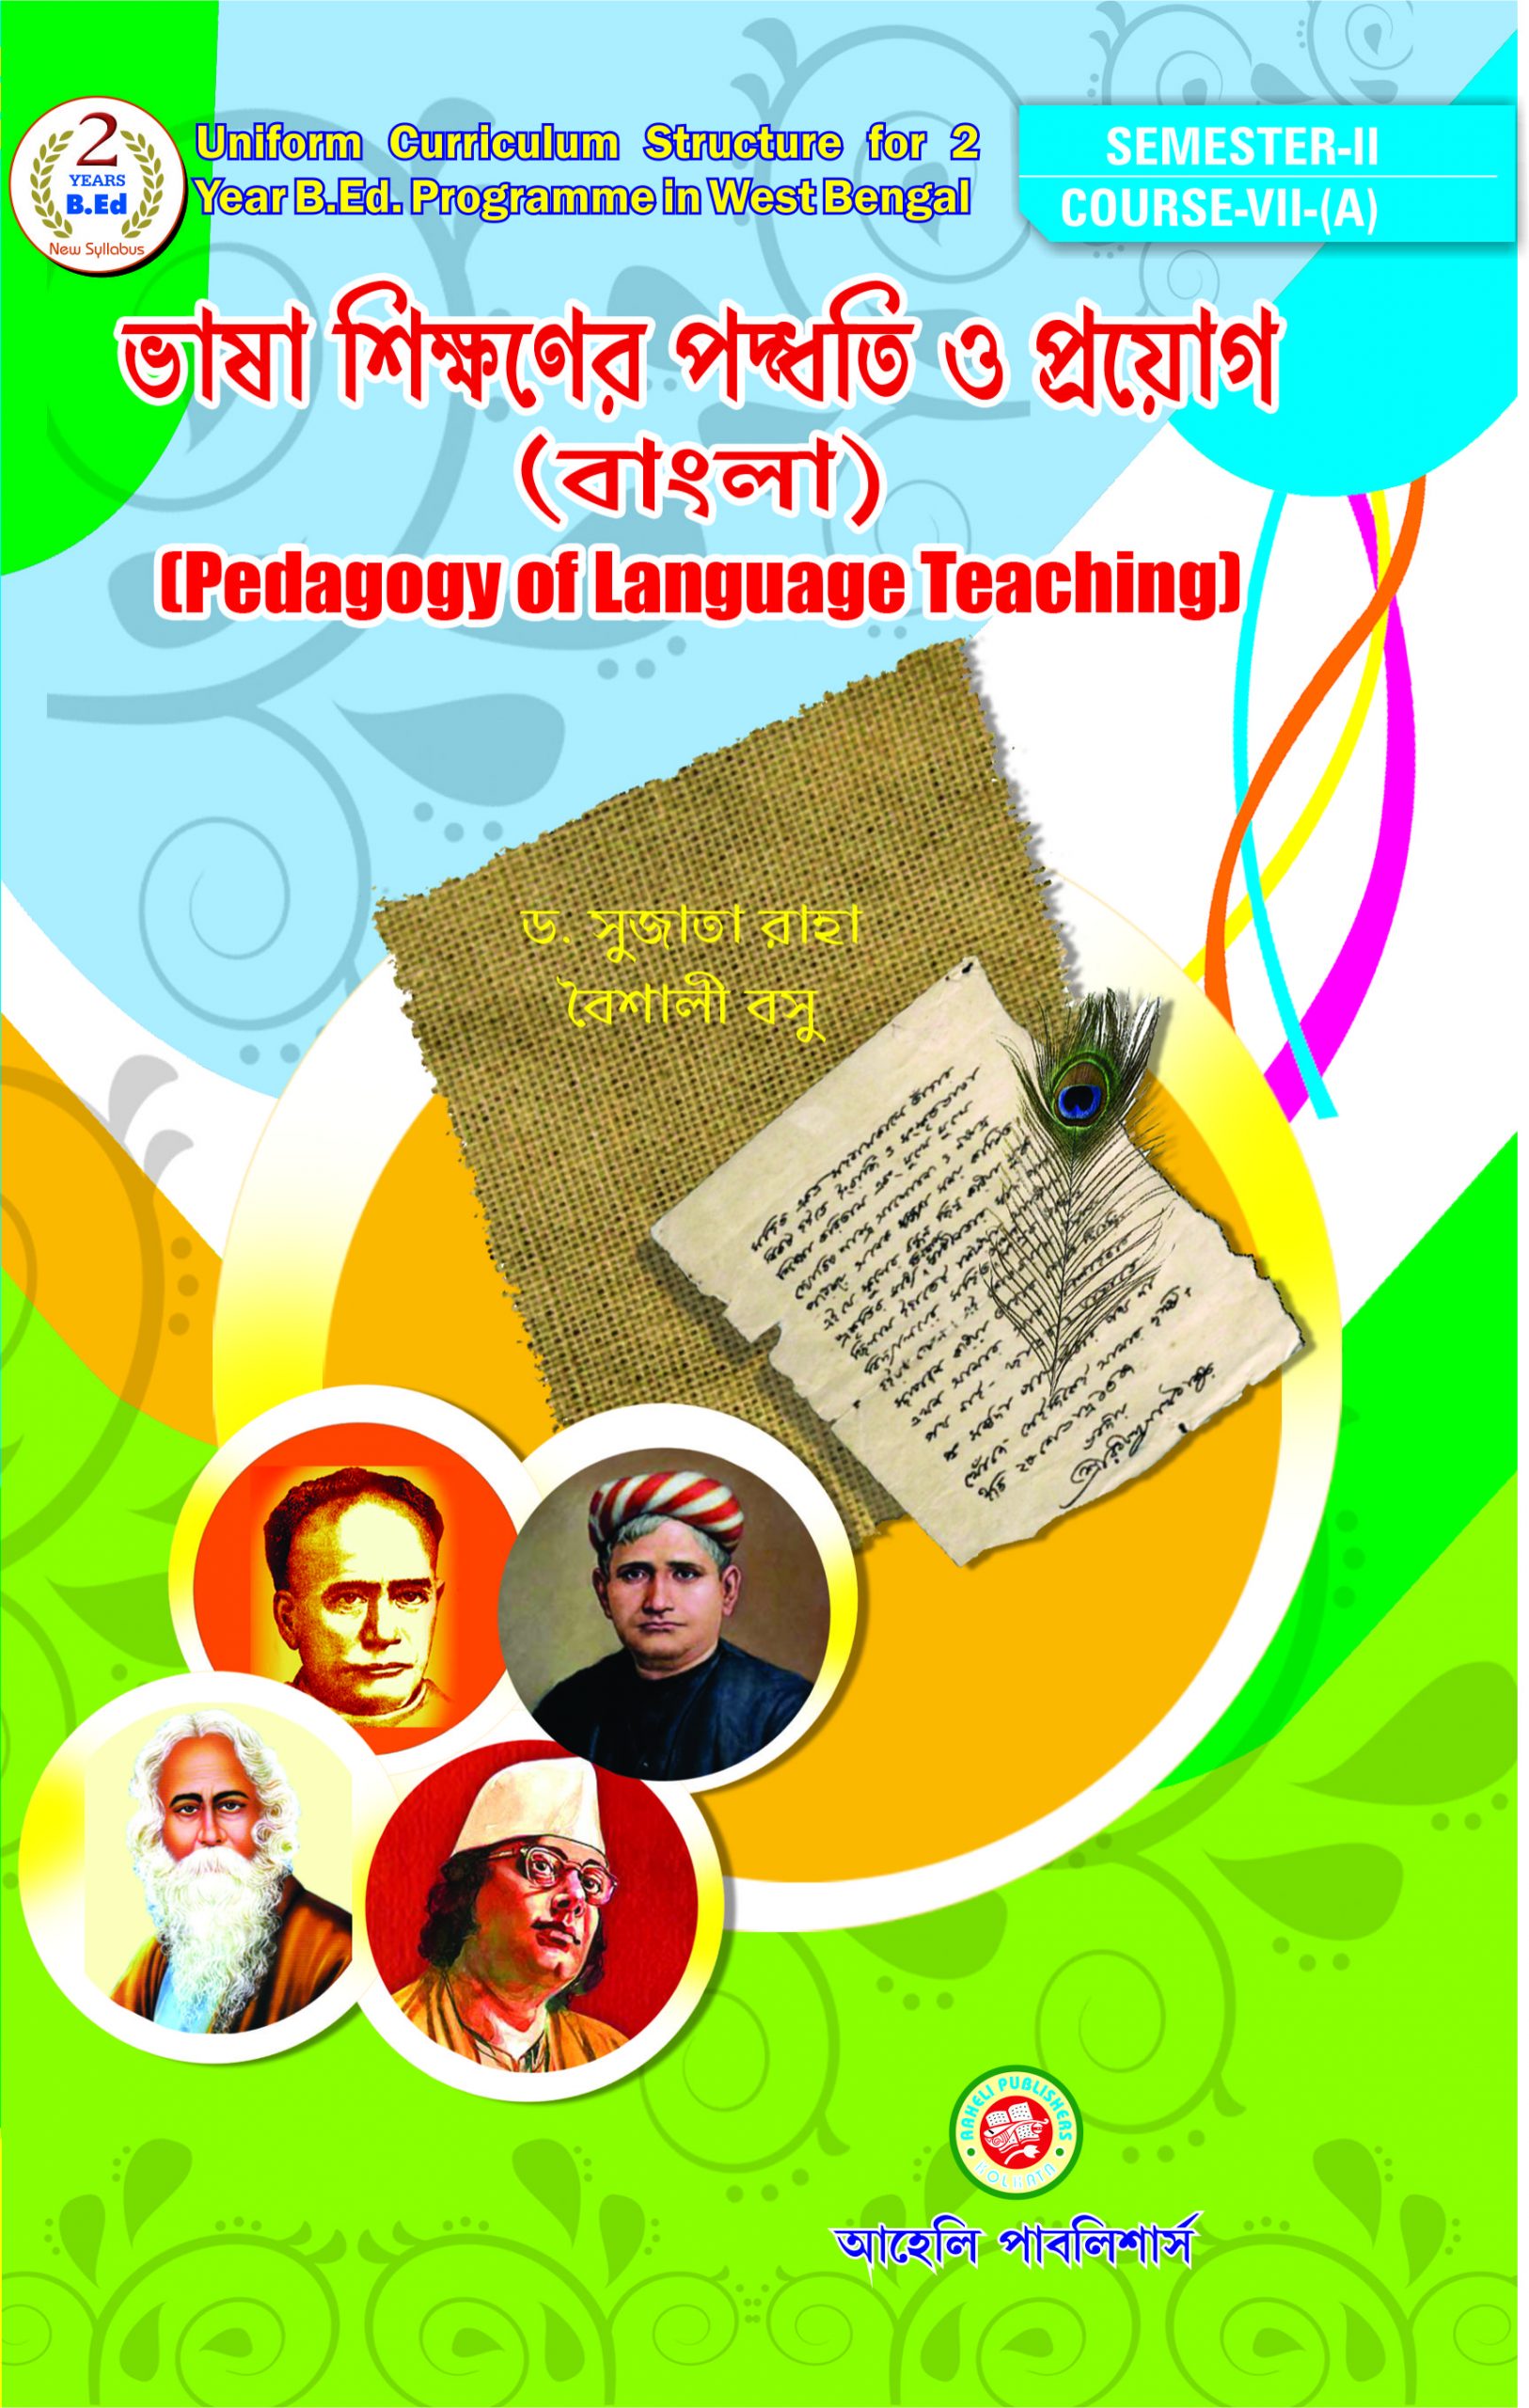 Pedagogy of Language Teaching(Bengali) 2nd sem